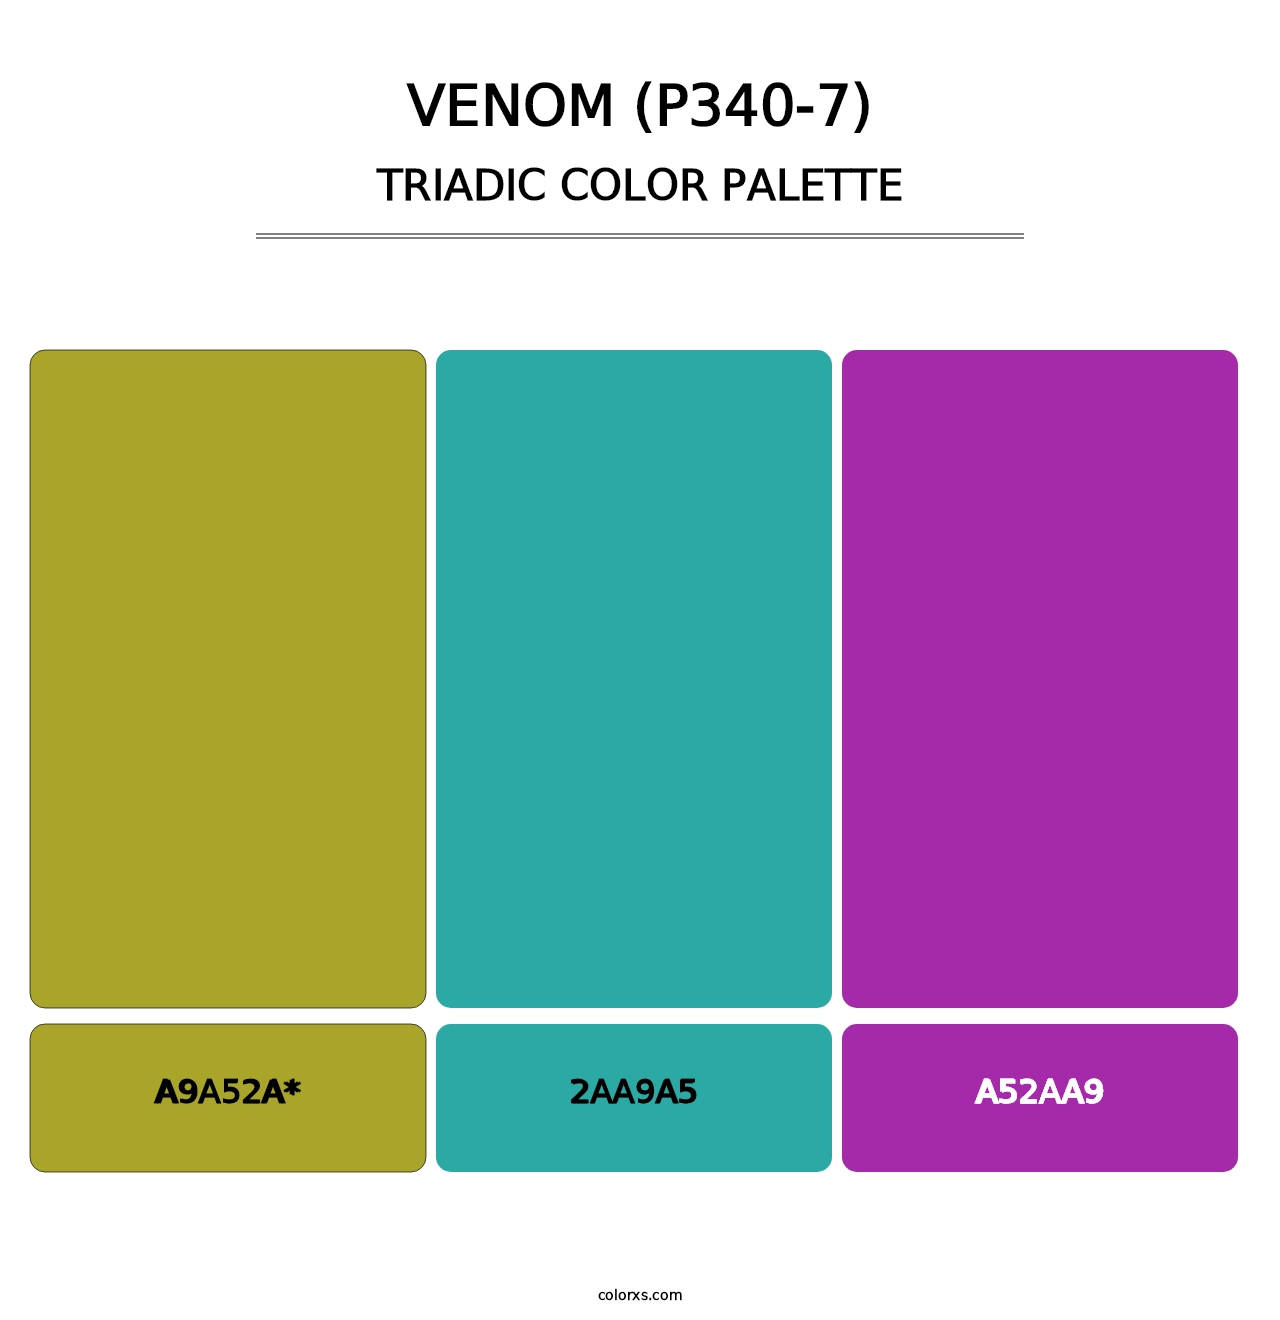 Venom (P340-7) - Triadic Color Palette